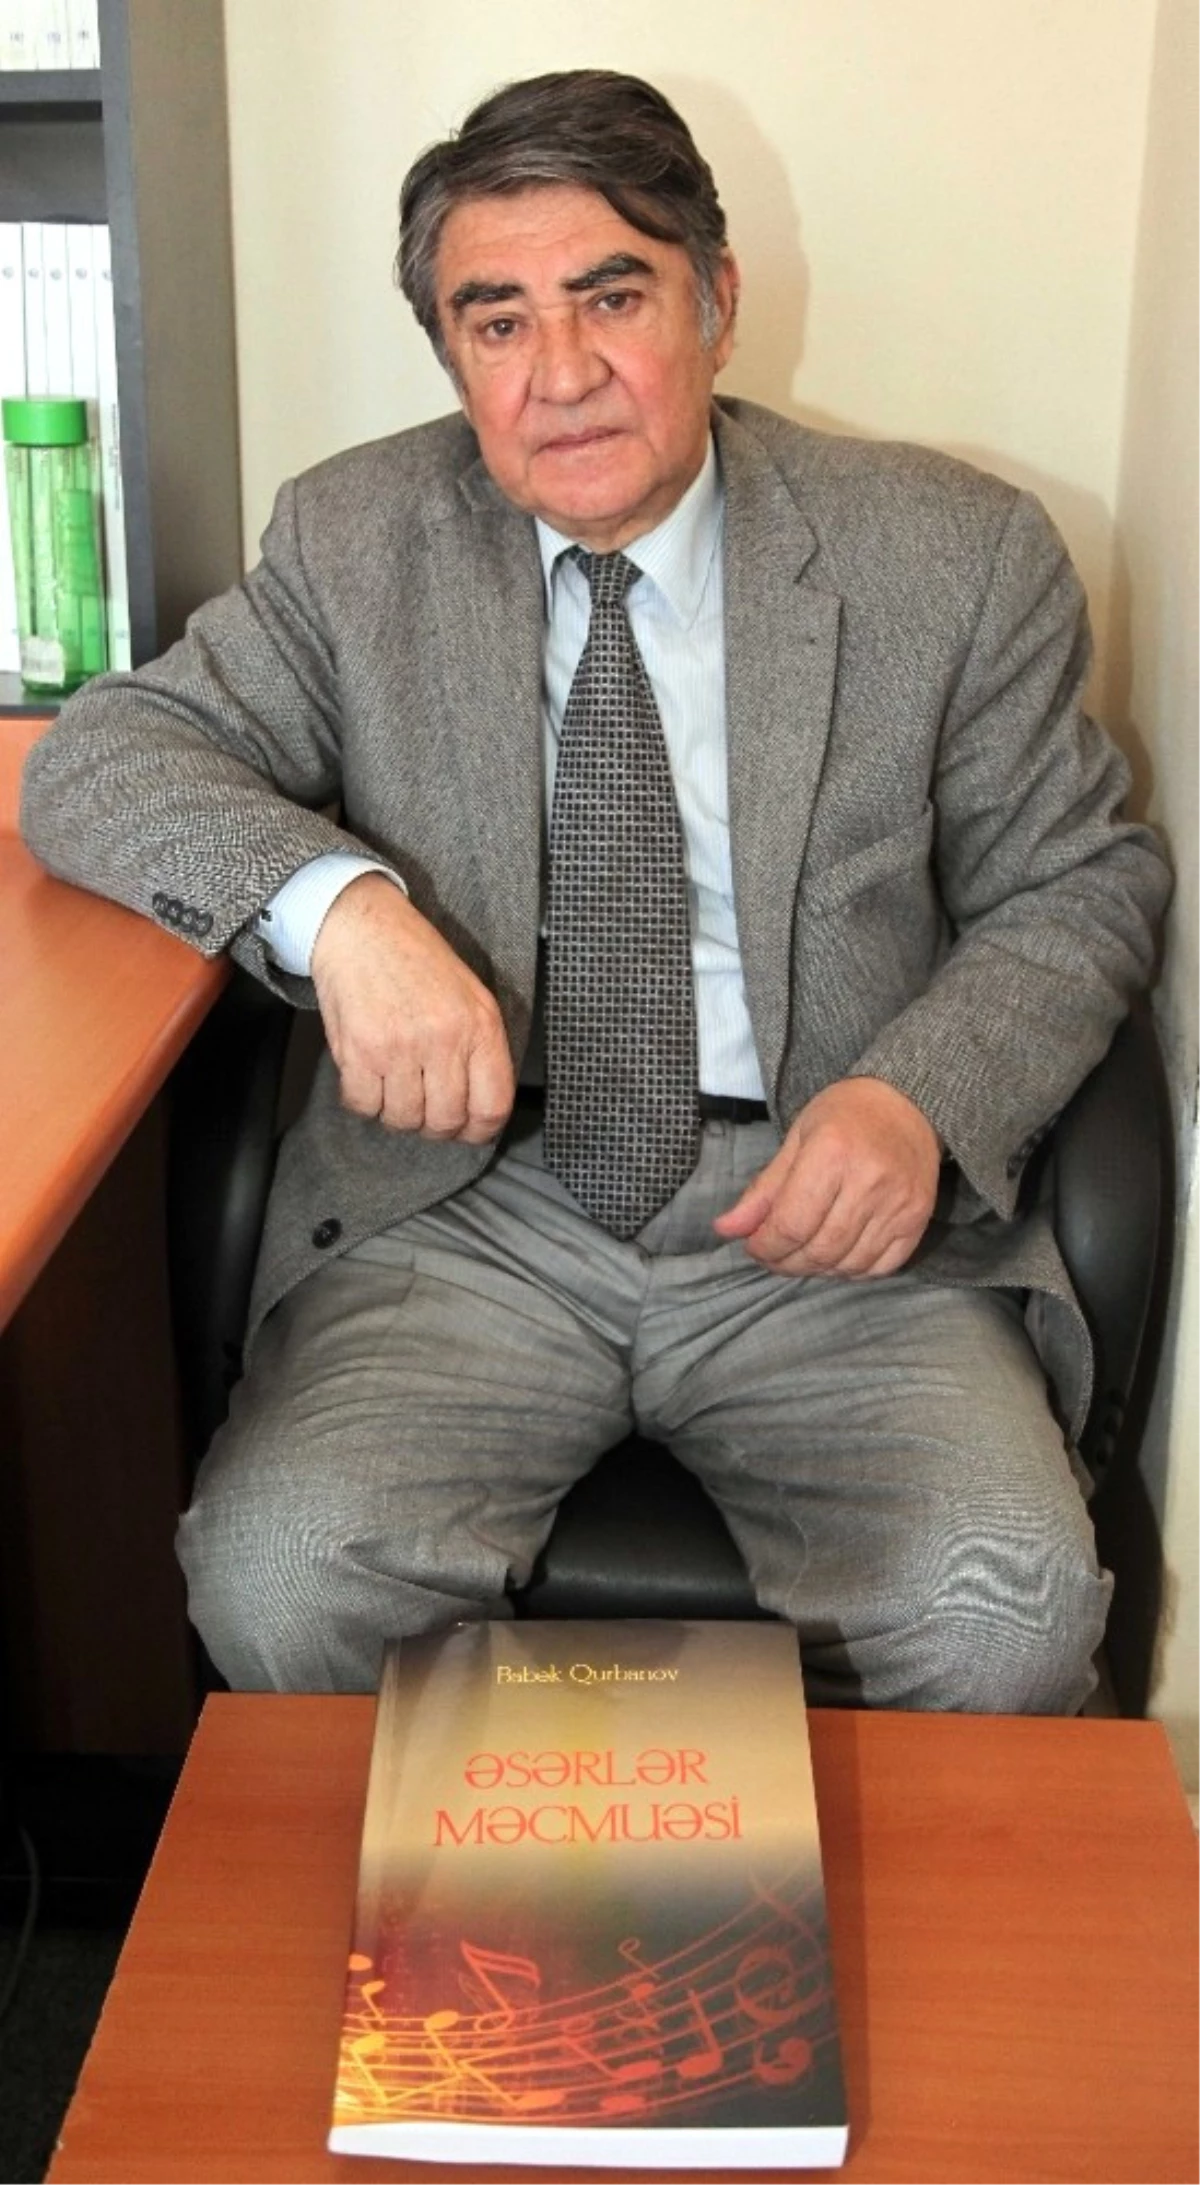 Gaün\'lü Azeri Prof. Dr. Babek Kurbanov 40. Kitabını Yayınladı